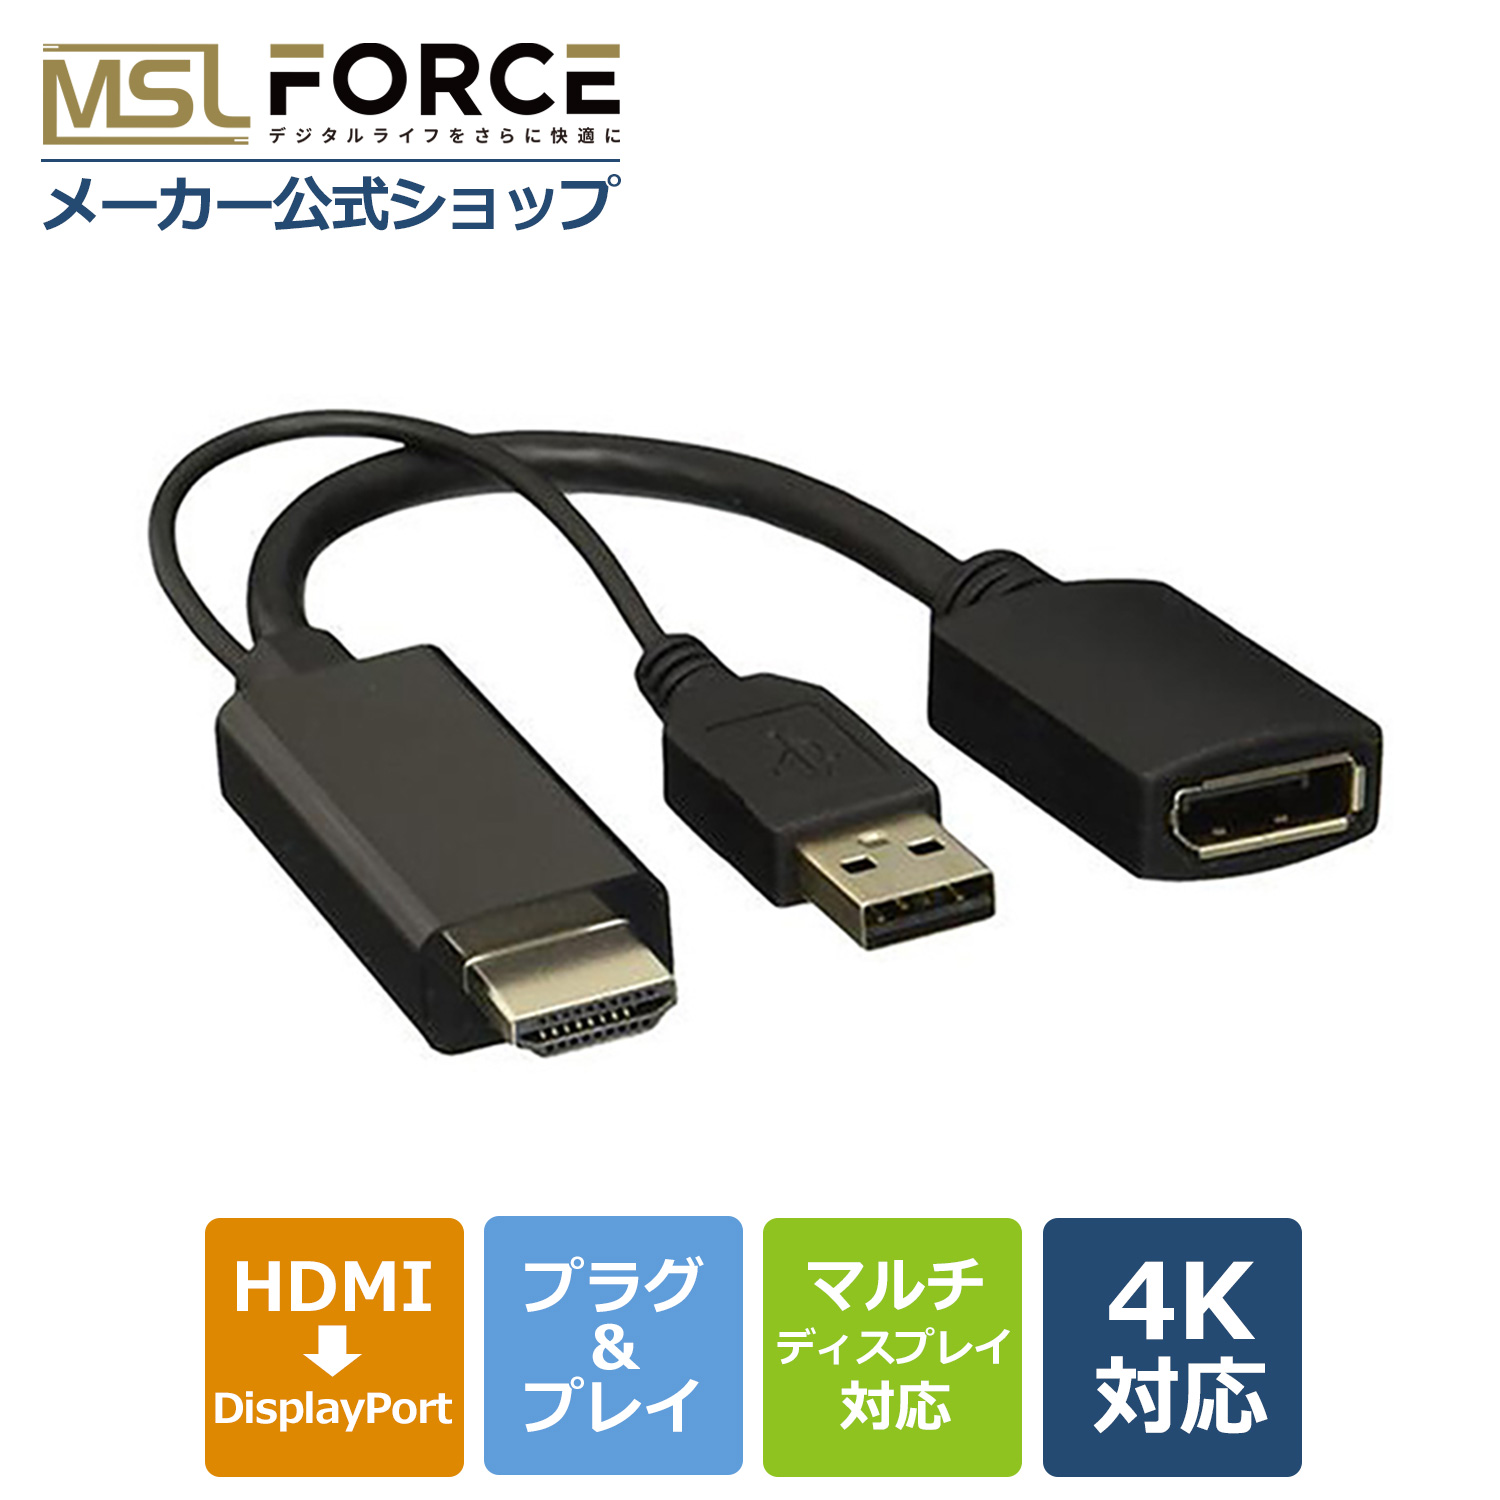 本日最大600円引き HDMI to DP変換アダプタ HDMI 4K DisplayPort Display USB 電源 適格請求書発行可 hd2dp4k-usb 送料無料